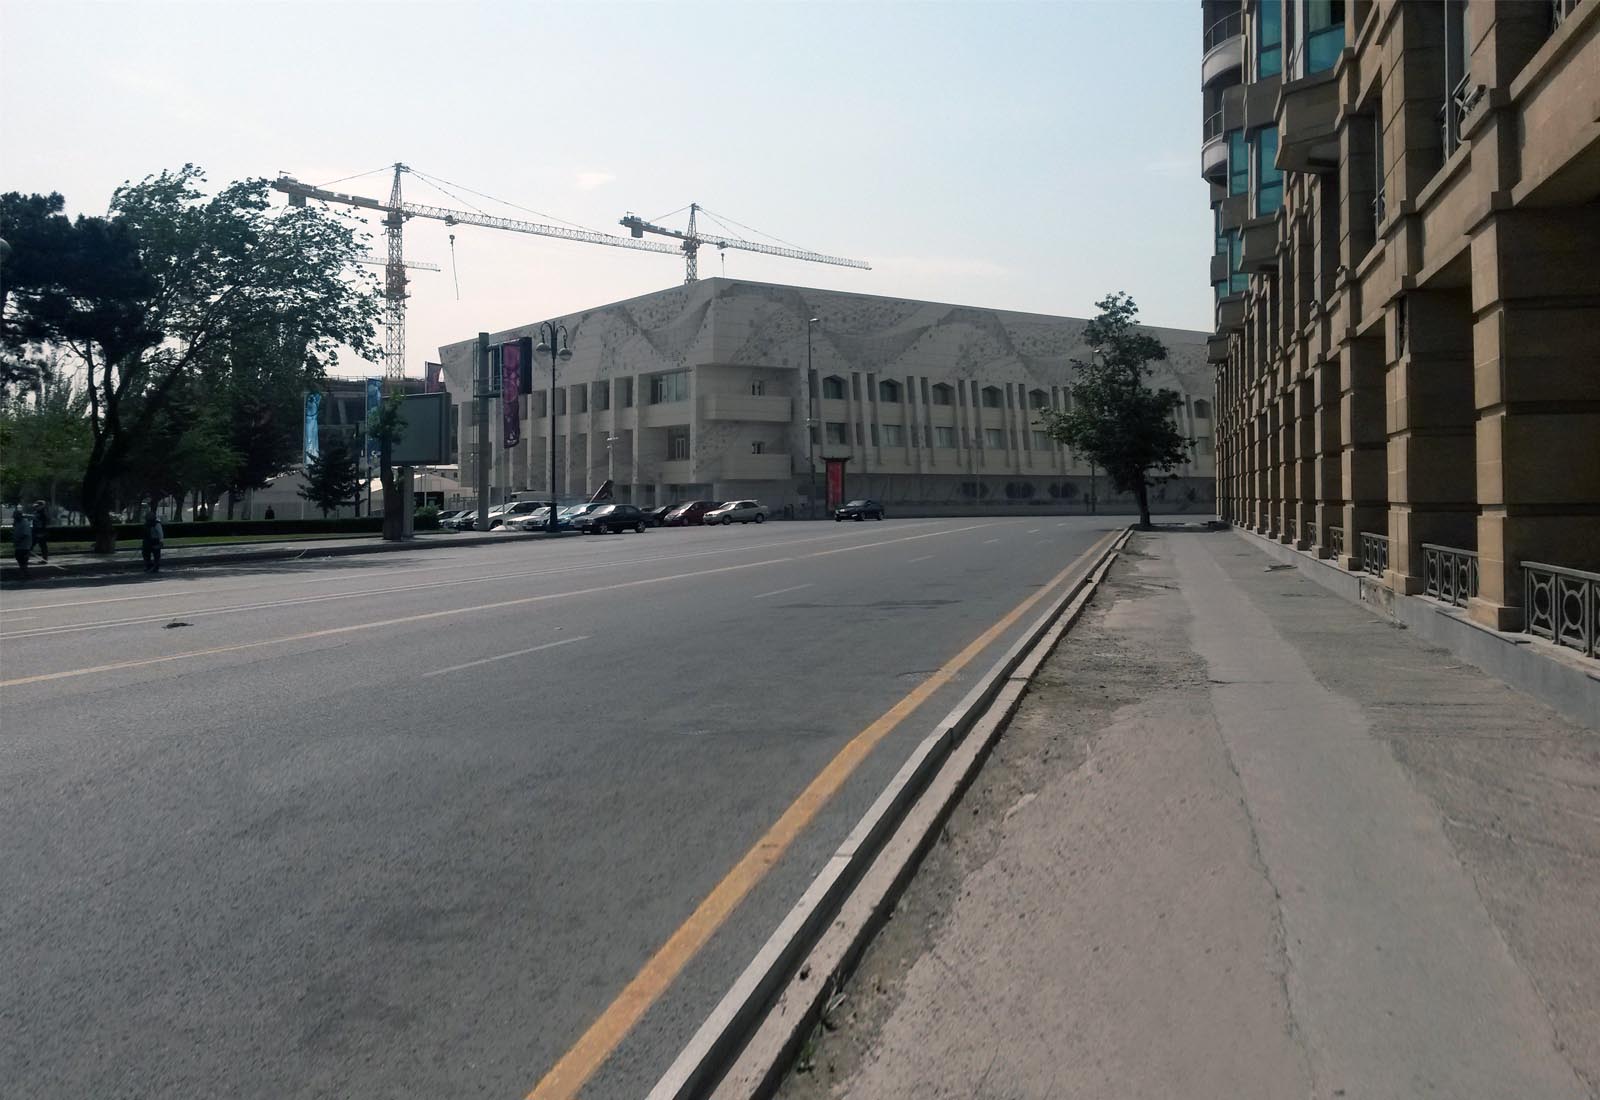 Baku sport hall - View